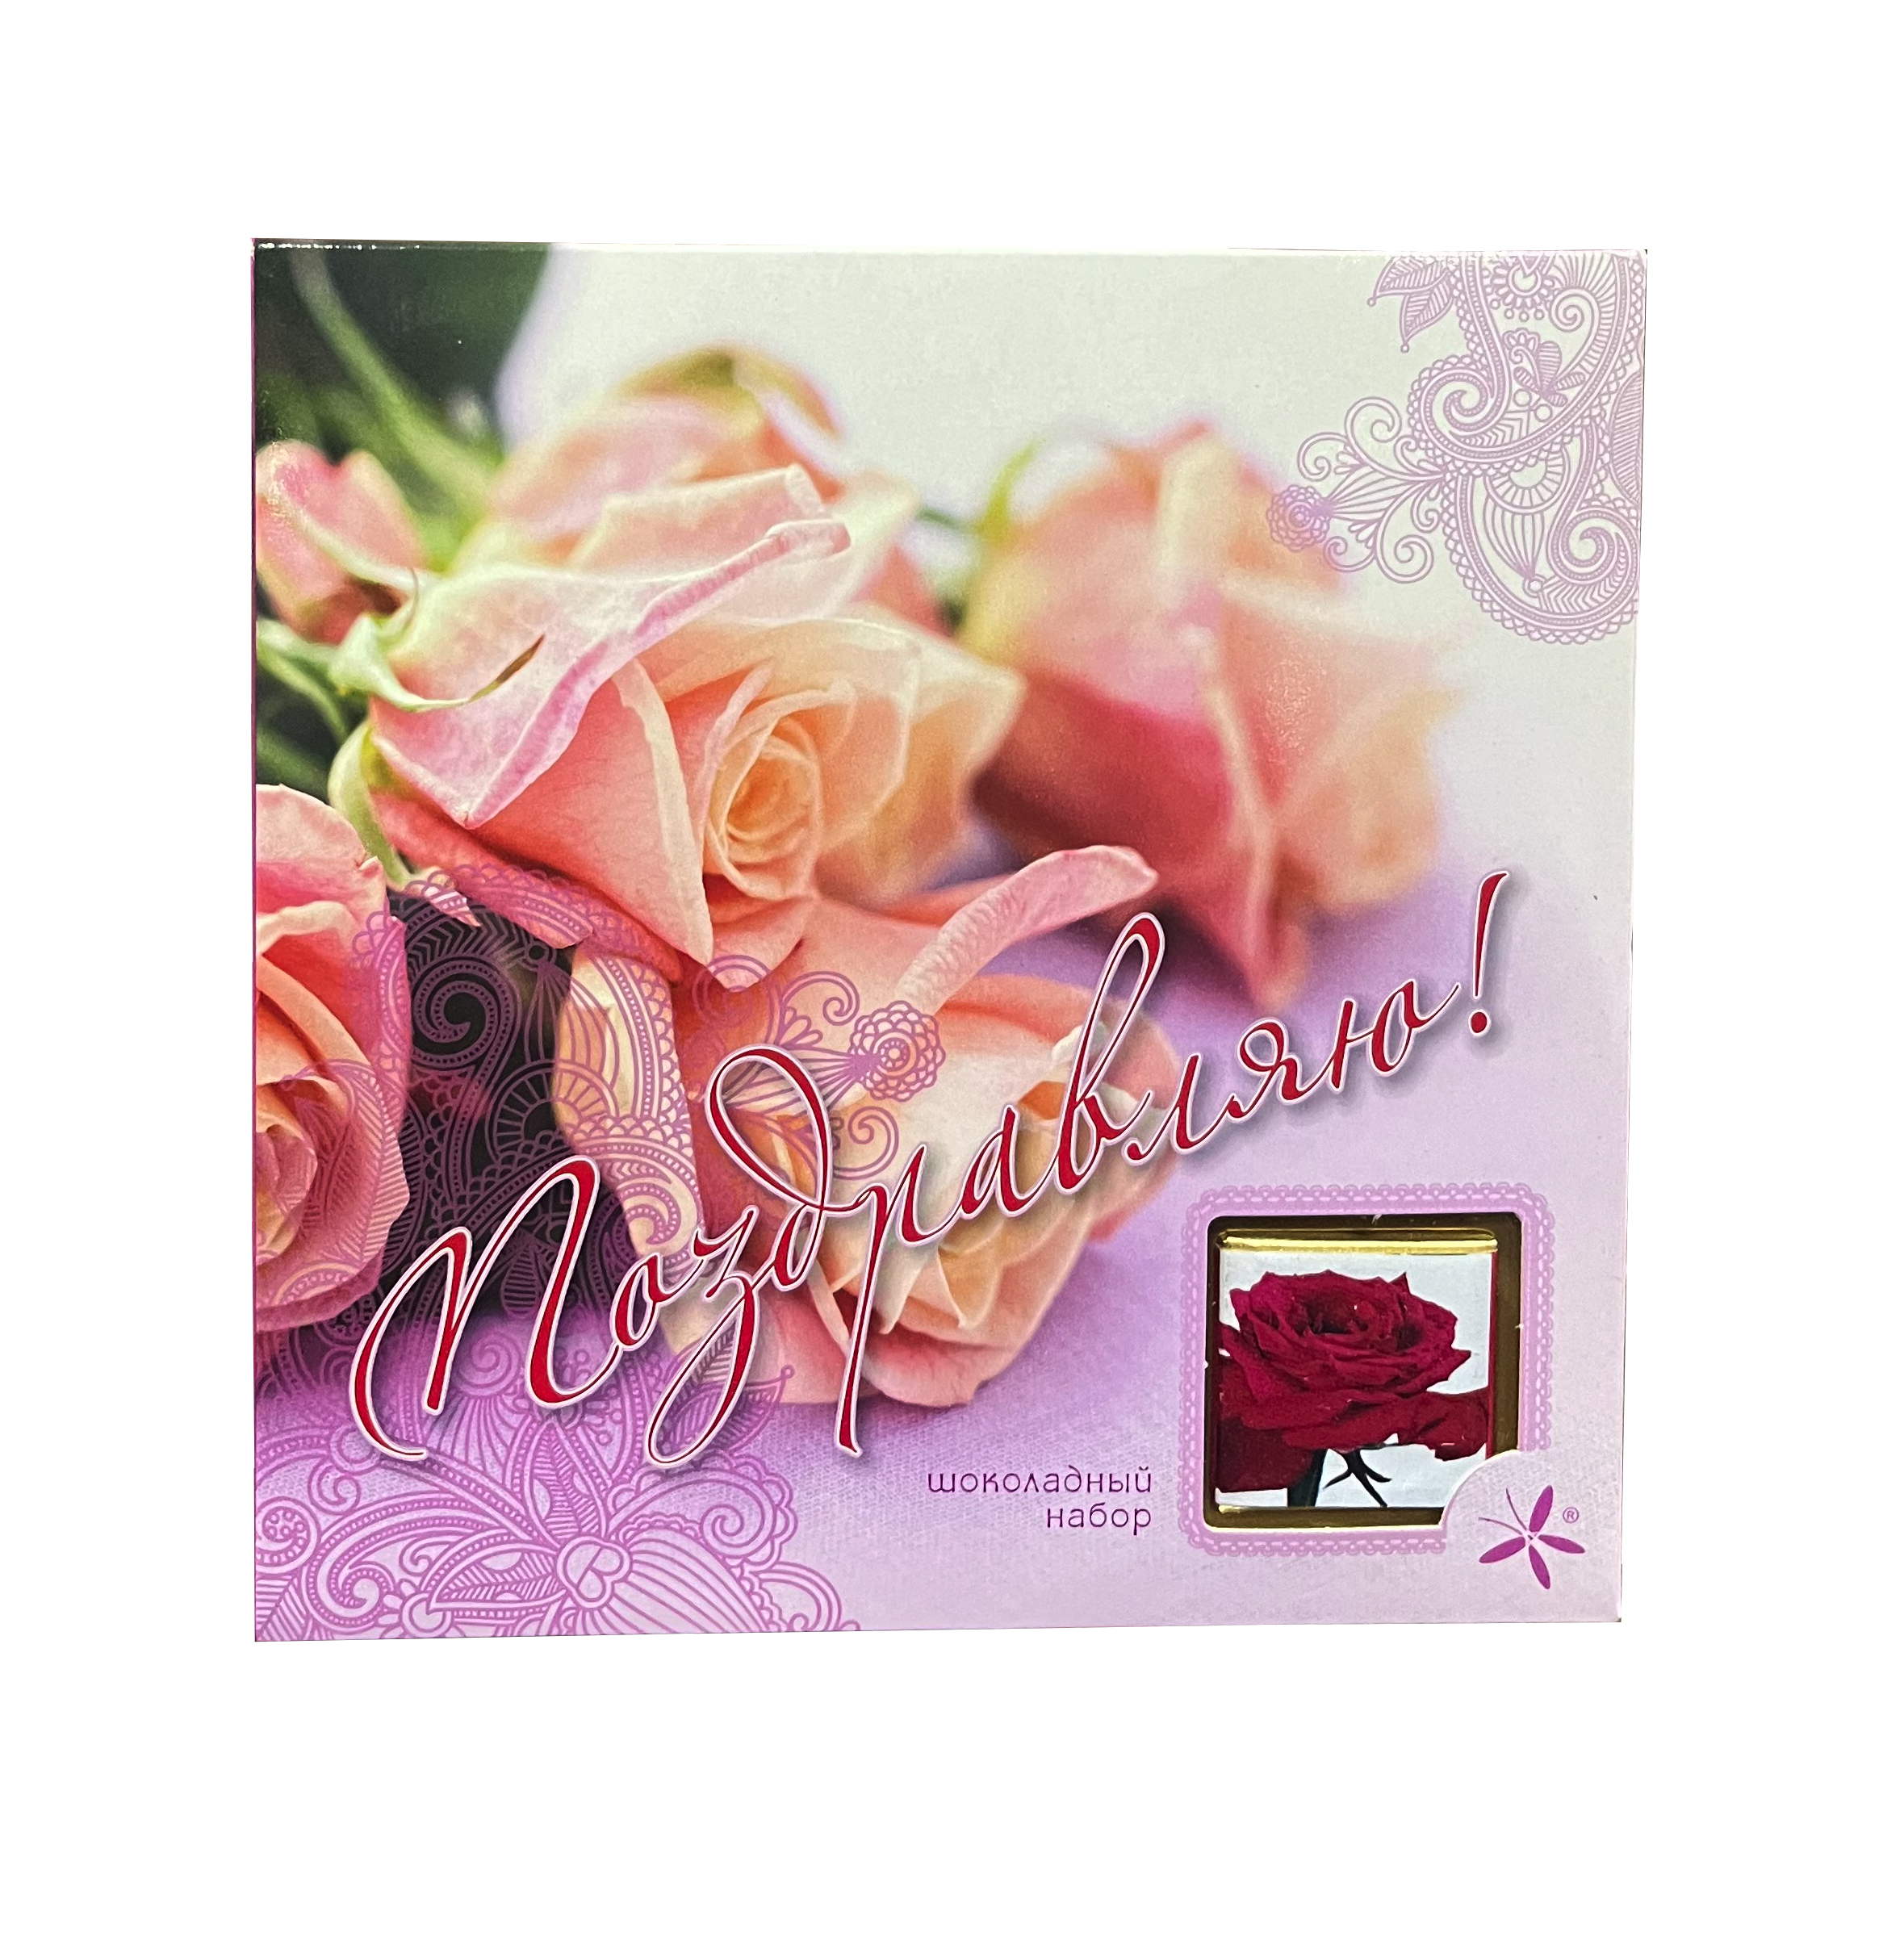 Шоколадный набор "Поздравляю" Розы 60г/Шоколадный Дом